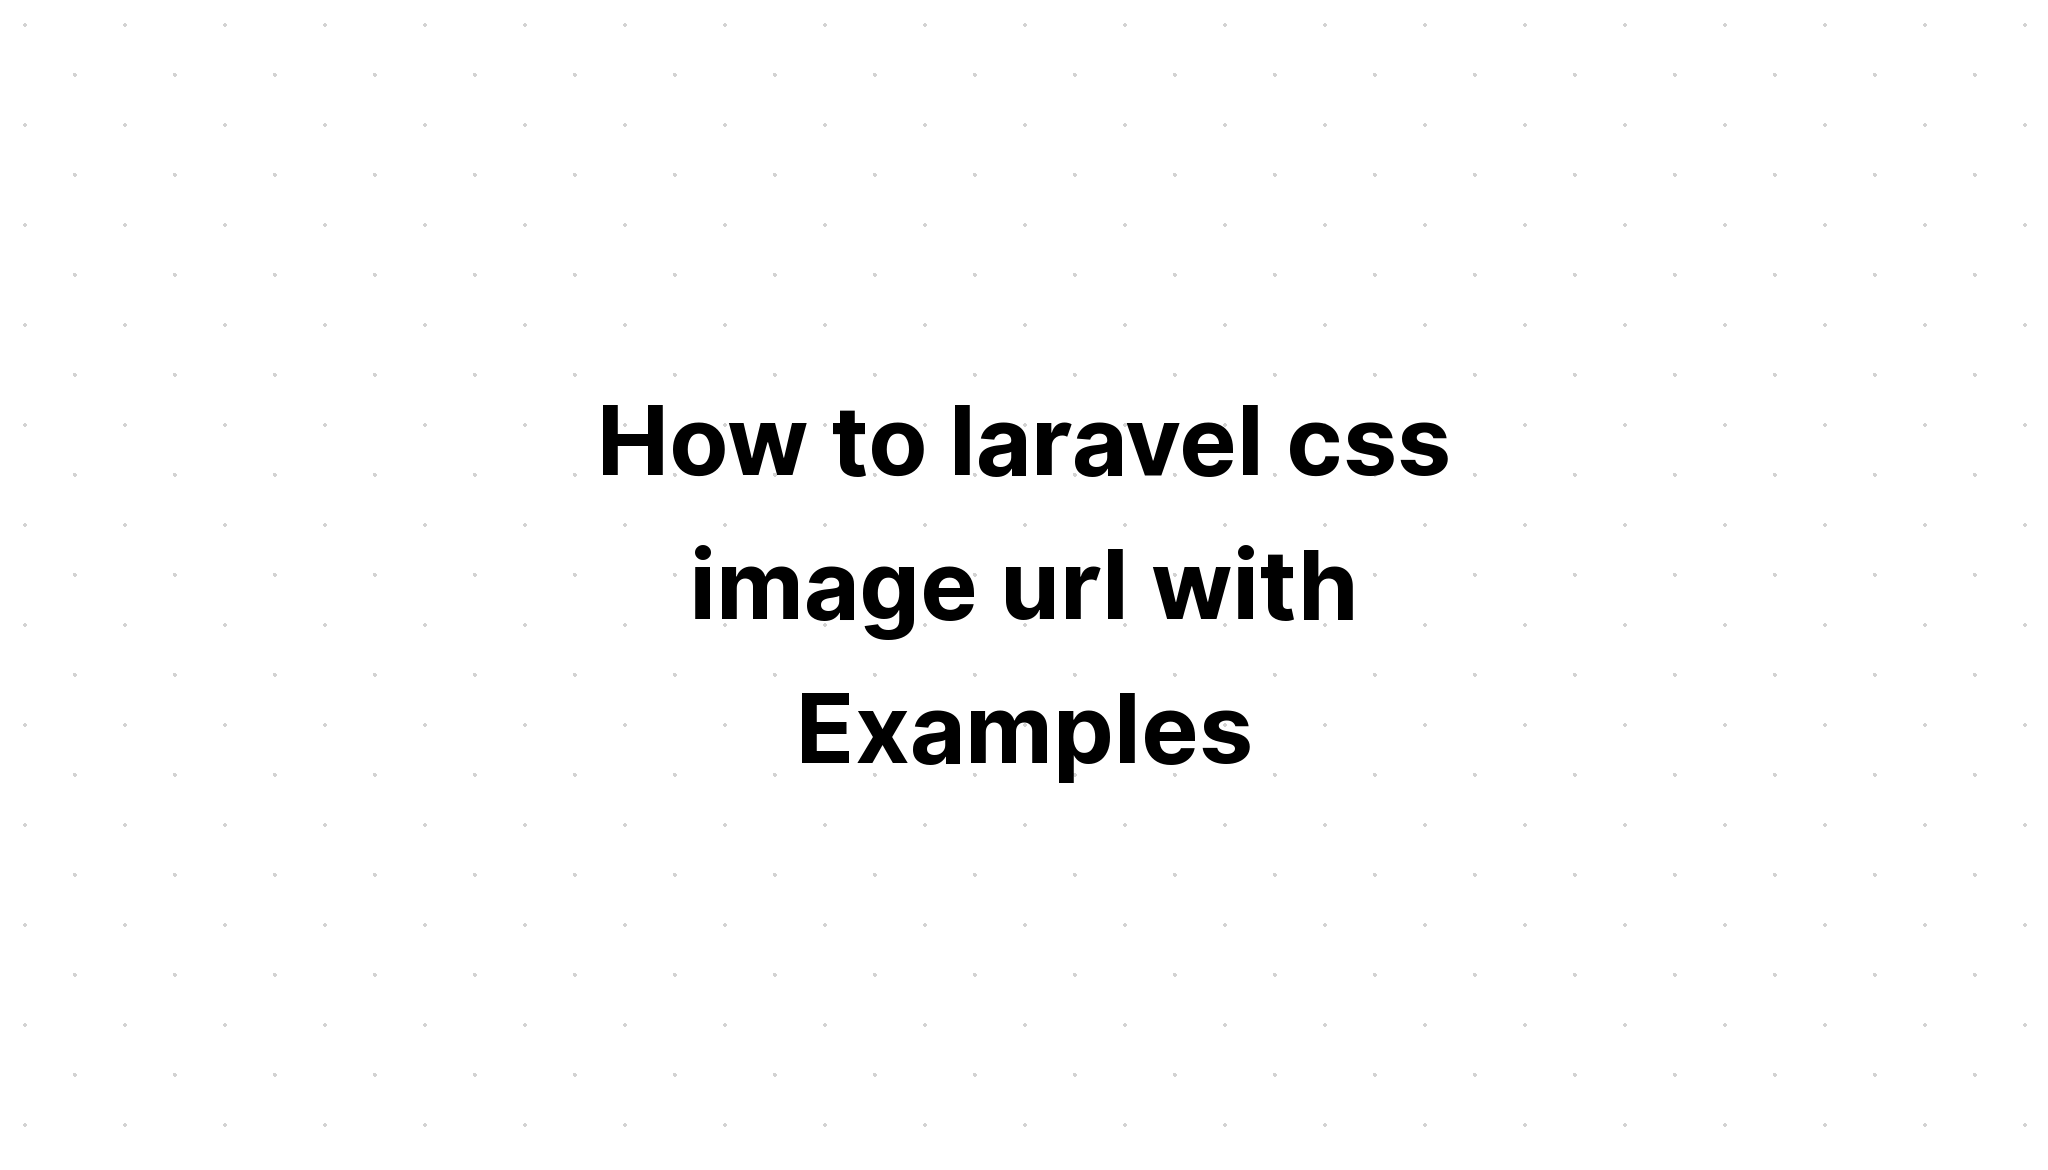 Cách tạo url hình ảnh css của laravel với các ví dụ